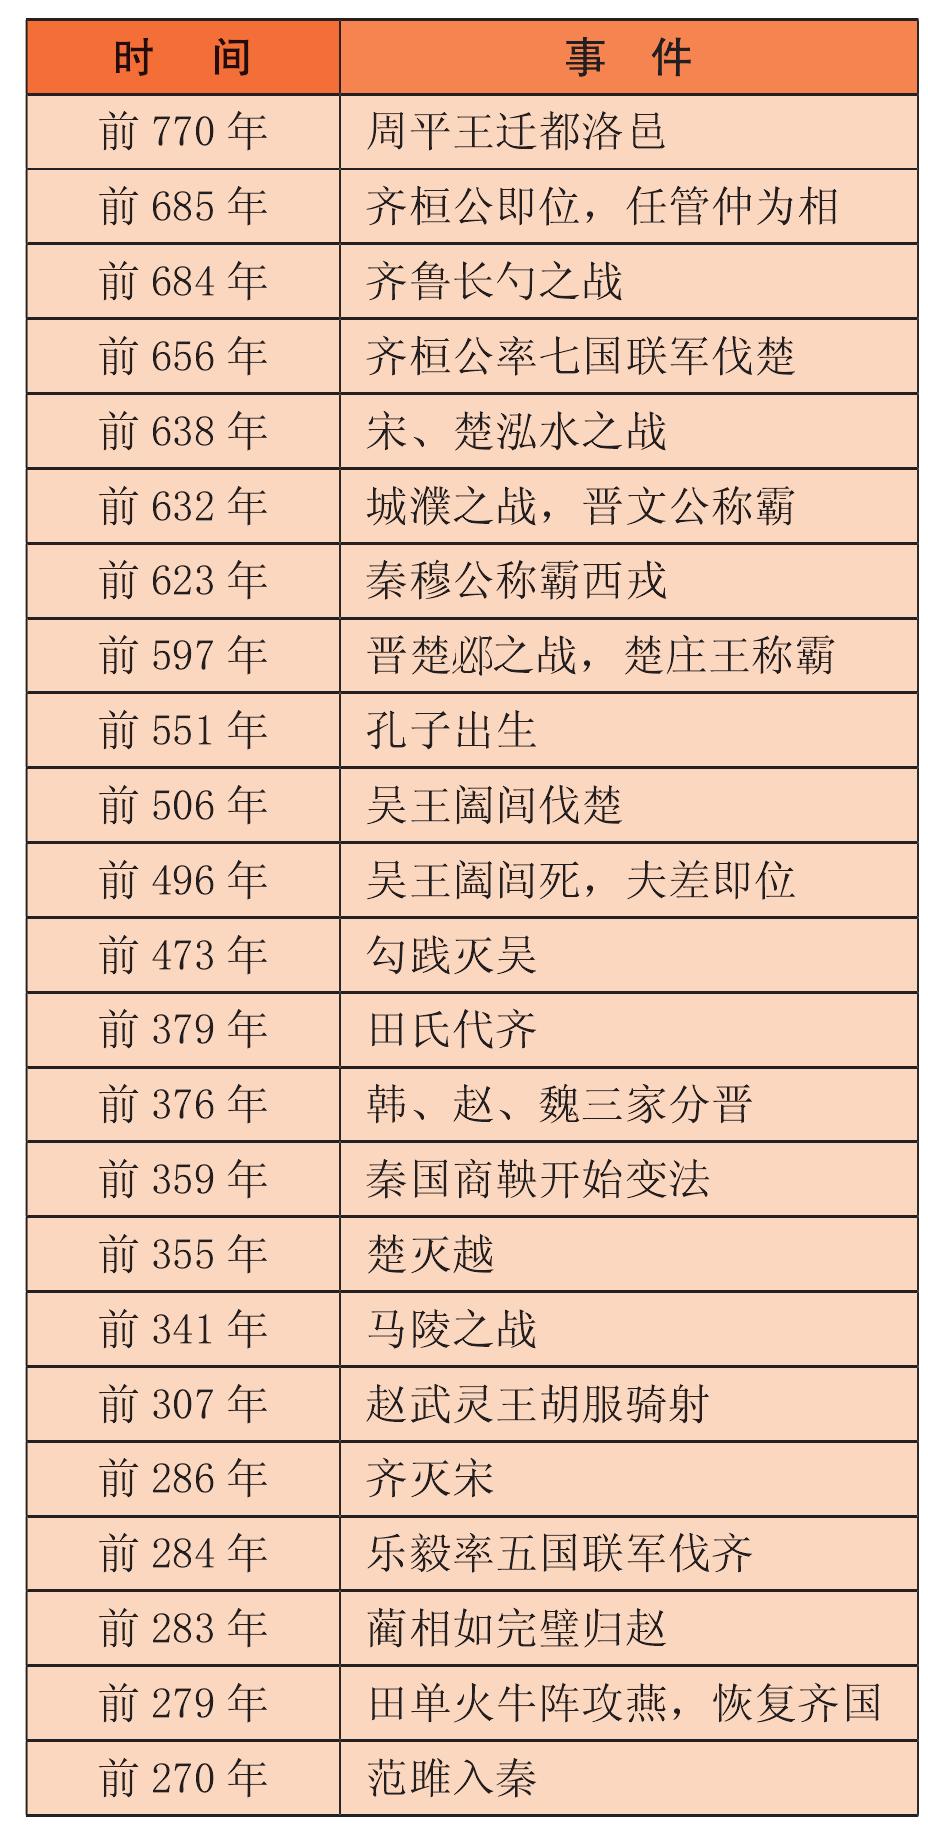 春秋战国大事年表（前770—前221年）